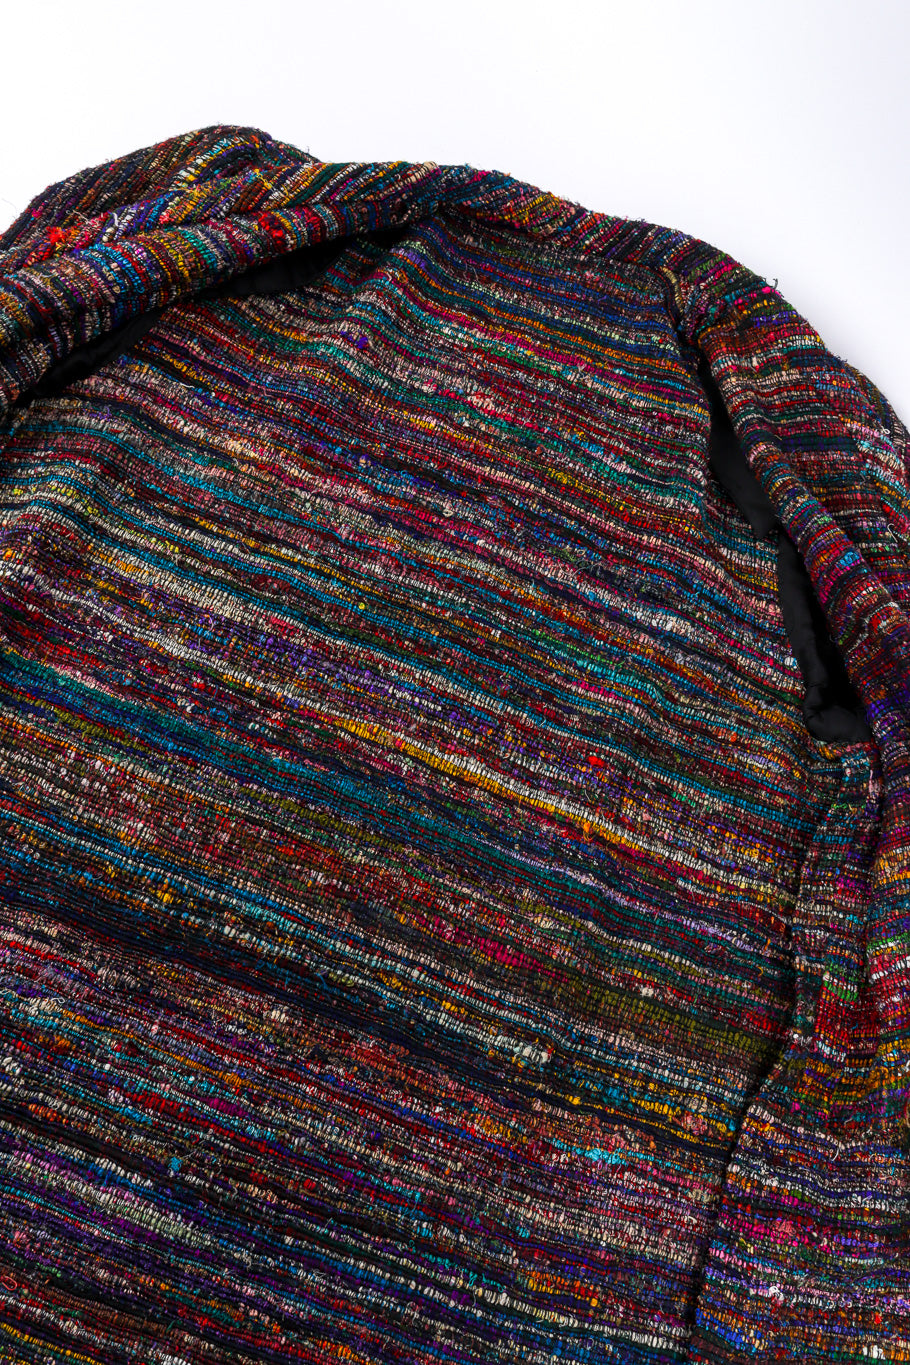 Woven Stripe Duster Coat by Pauline Trigere open inside @recessla